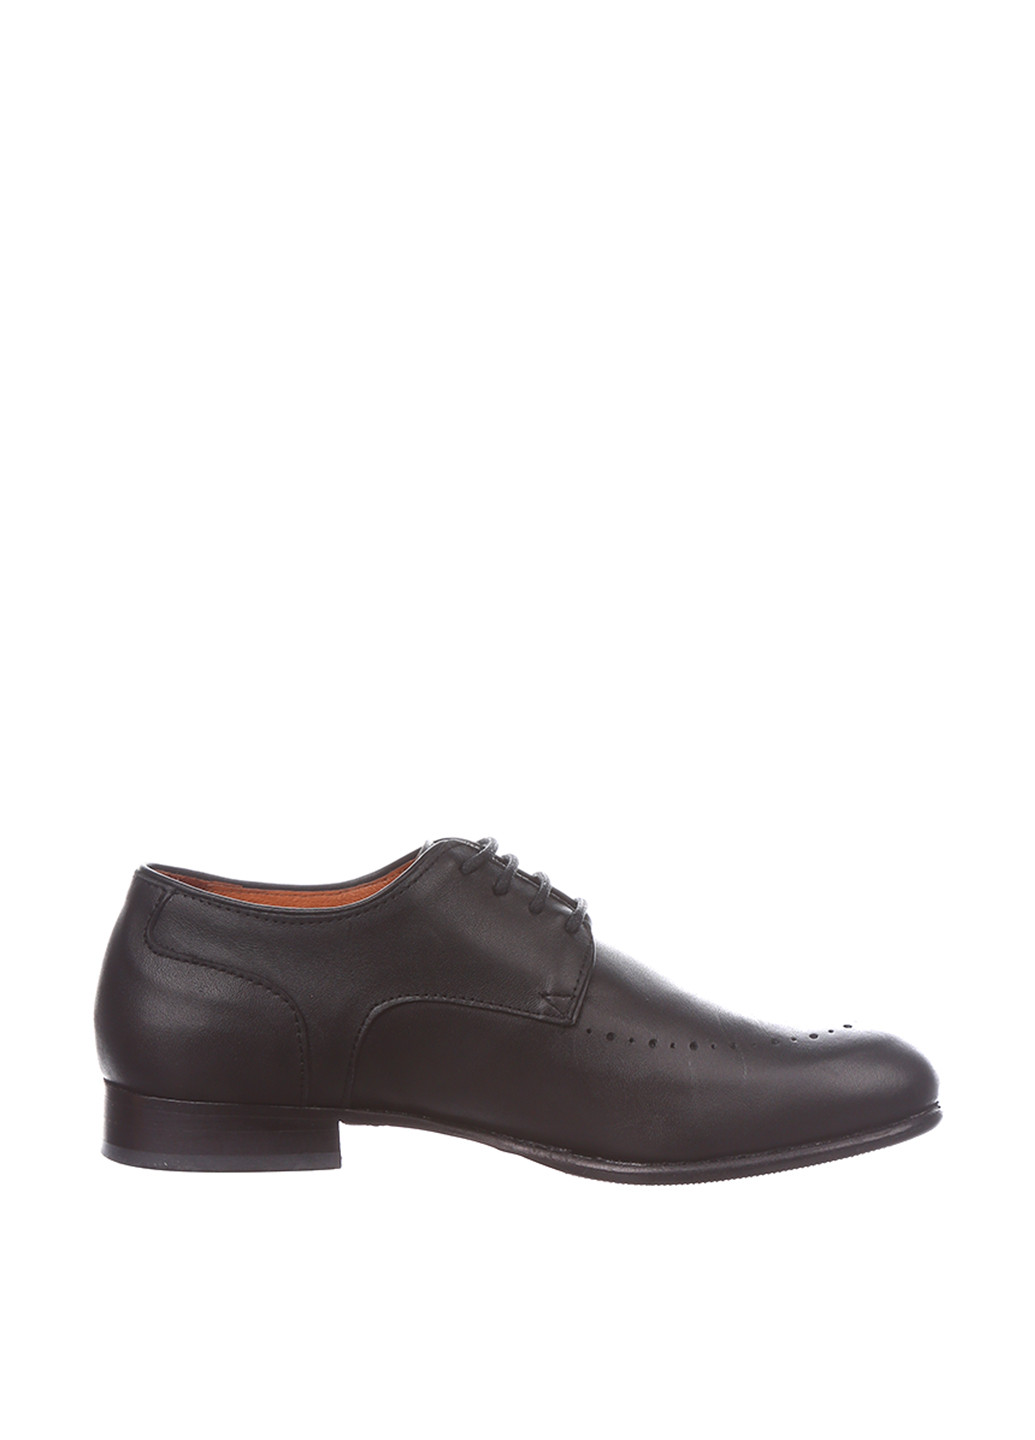 Черные туфли со шнурками Carlo Pignatelli